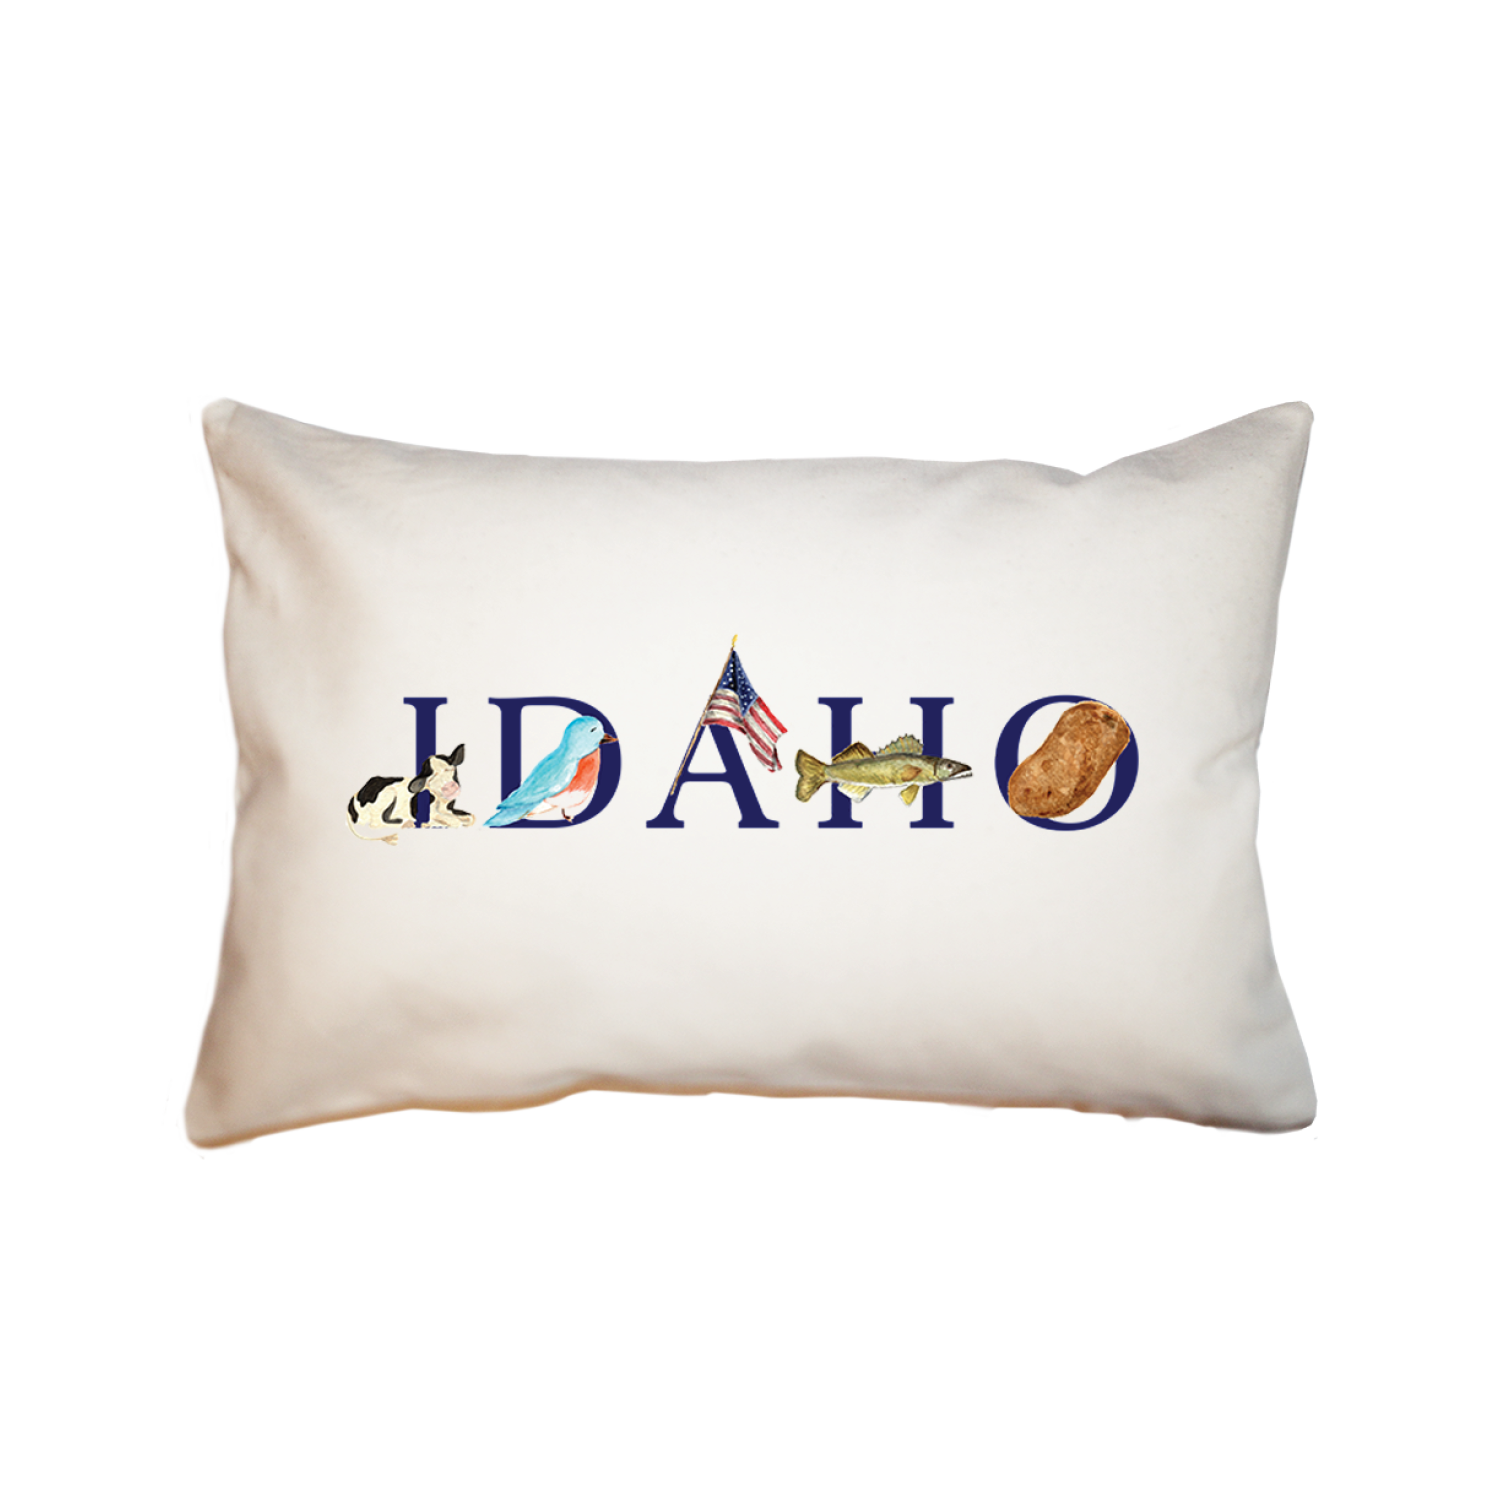 Idaho large rectangle pillow